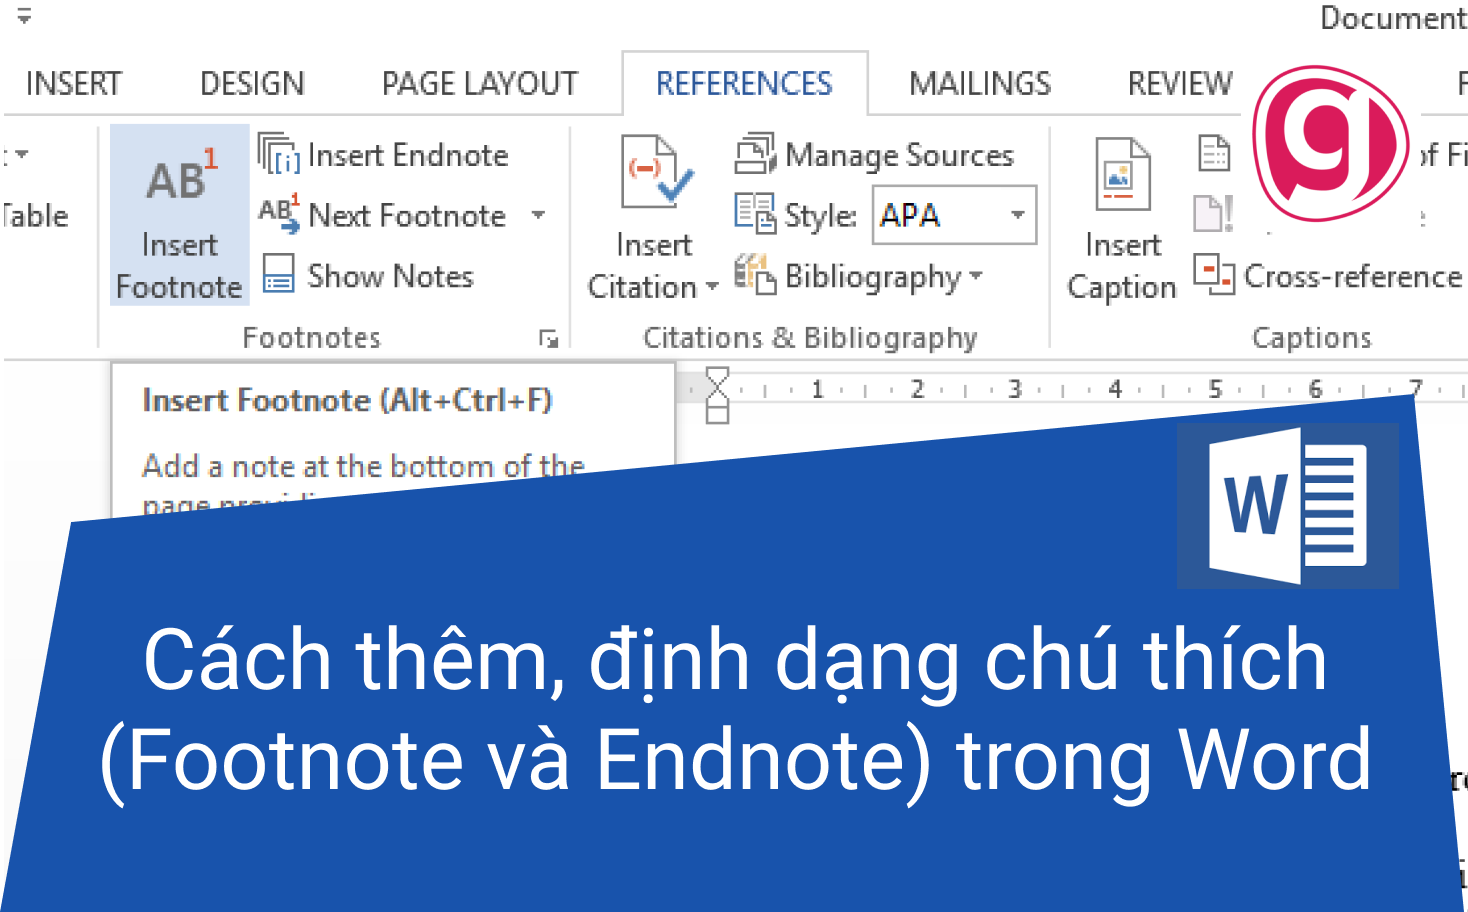 endnote vs footnote google docs